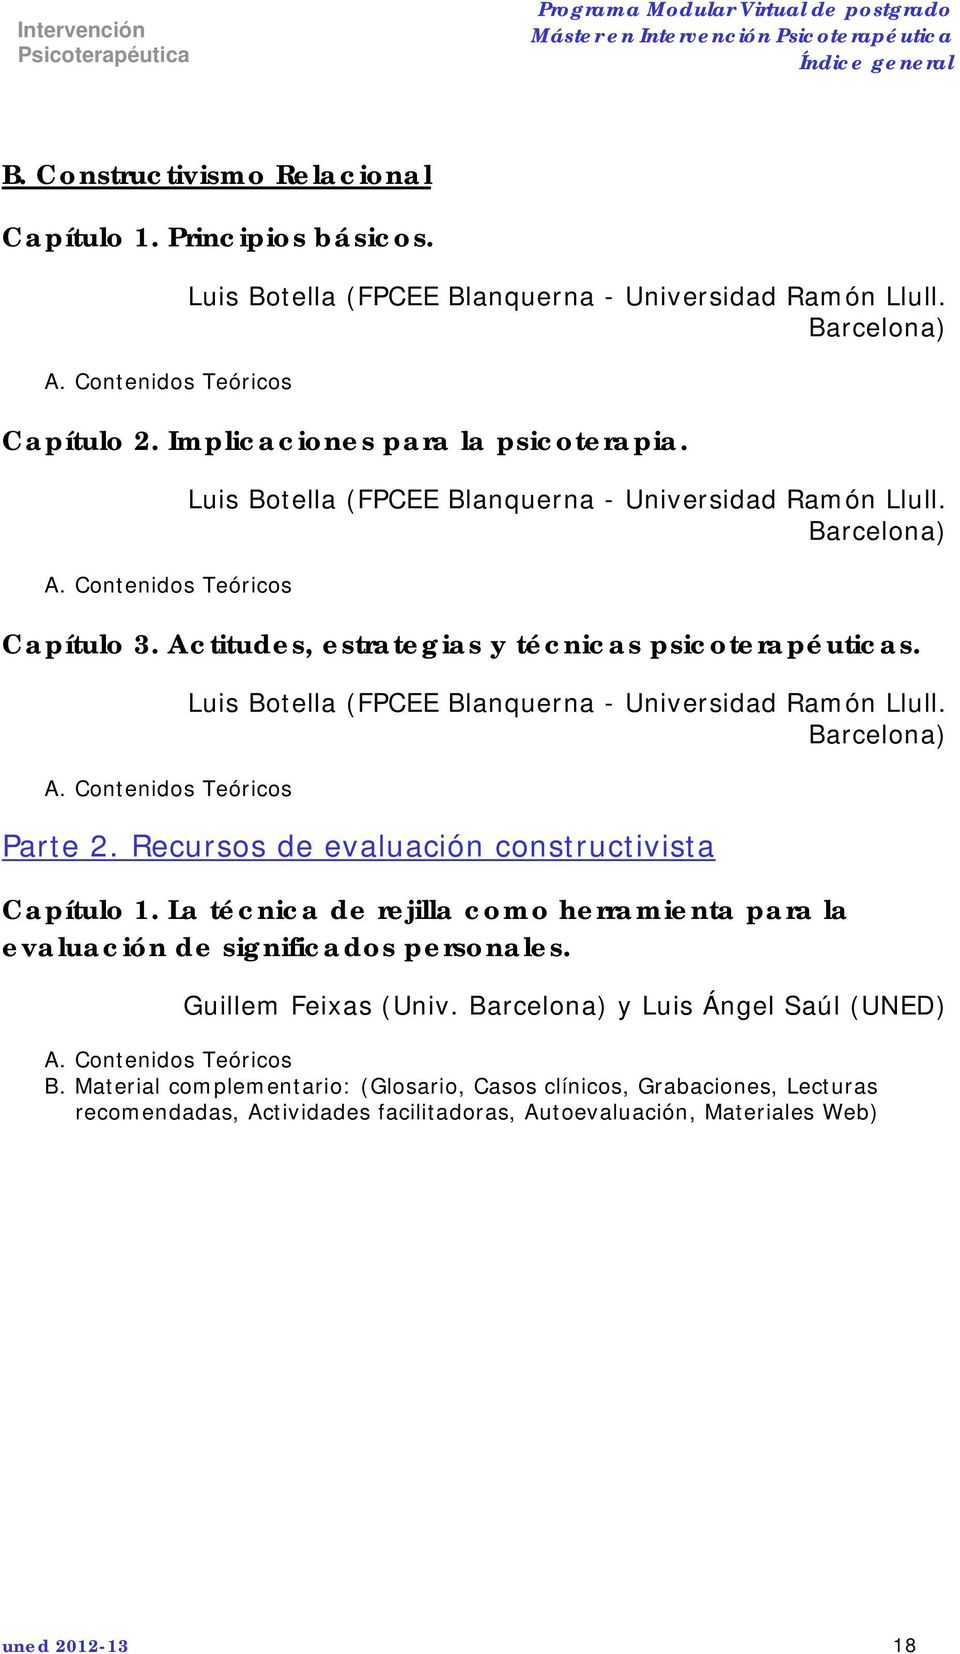 Luis Botella (FPCEE Blanquerna - Universidad Ramón Llull. Barcelona) Parte 2. Recursos de evaluación constructivista Capítulo 1.